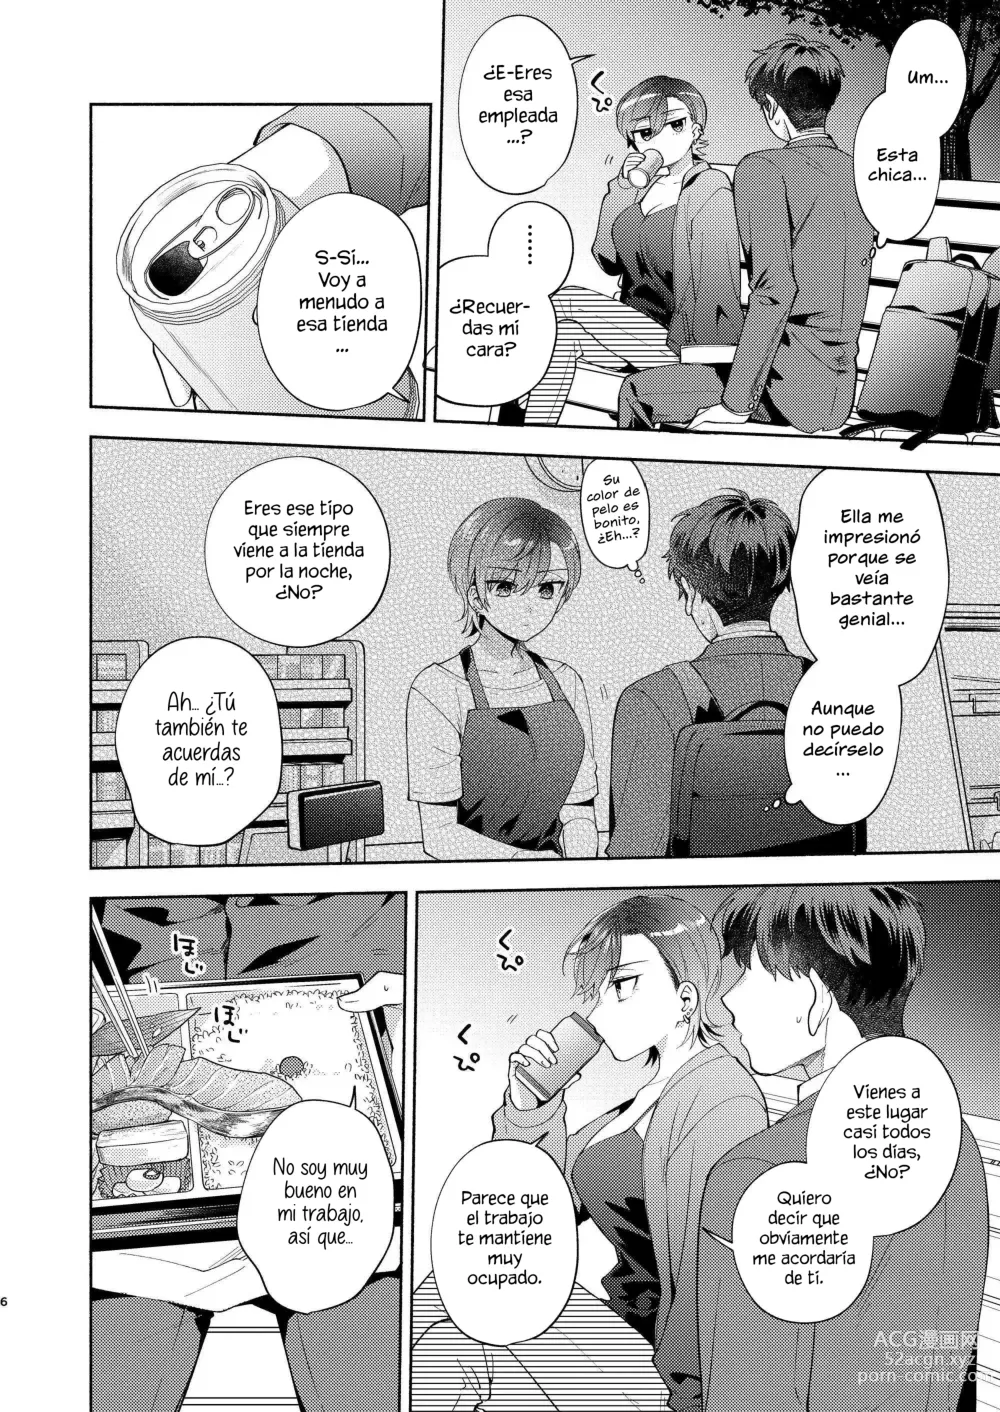 Page 5 of doujinshi Hiyoko es una entrometida